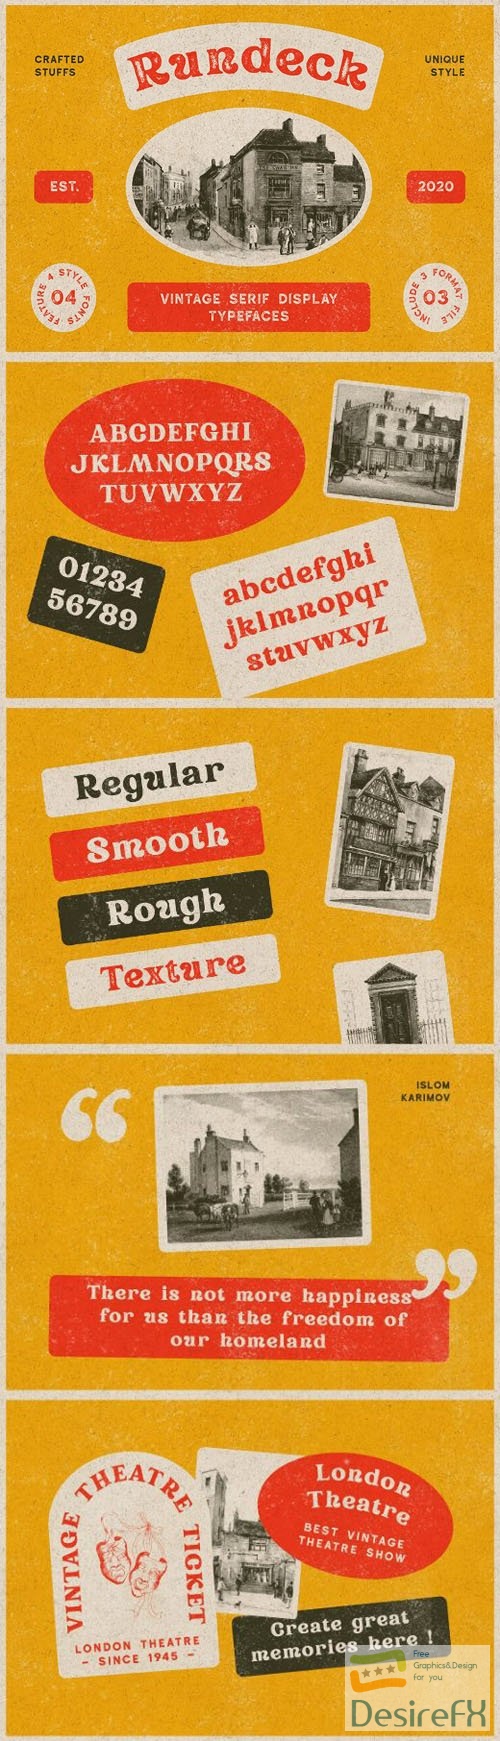 Rundeck - Vintage Serif Display Typeface